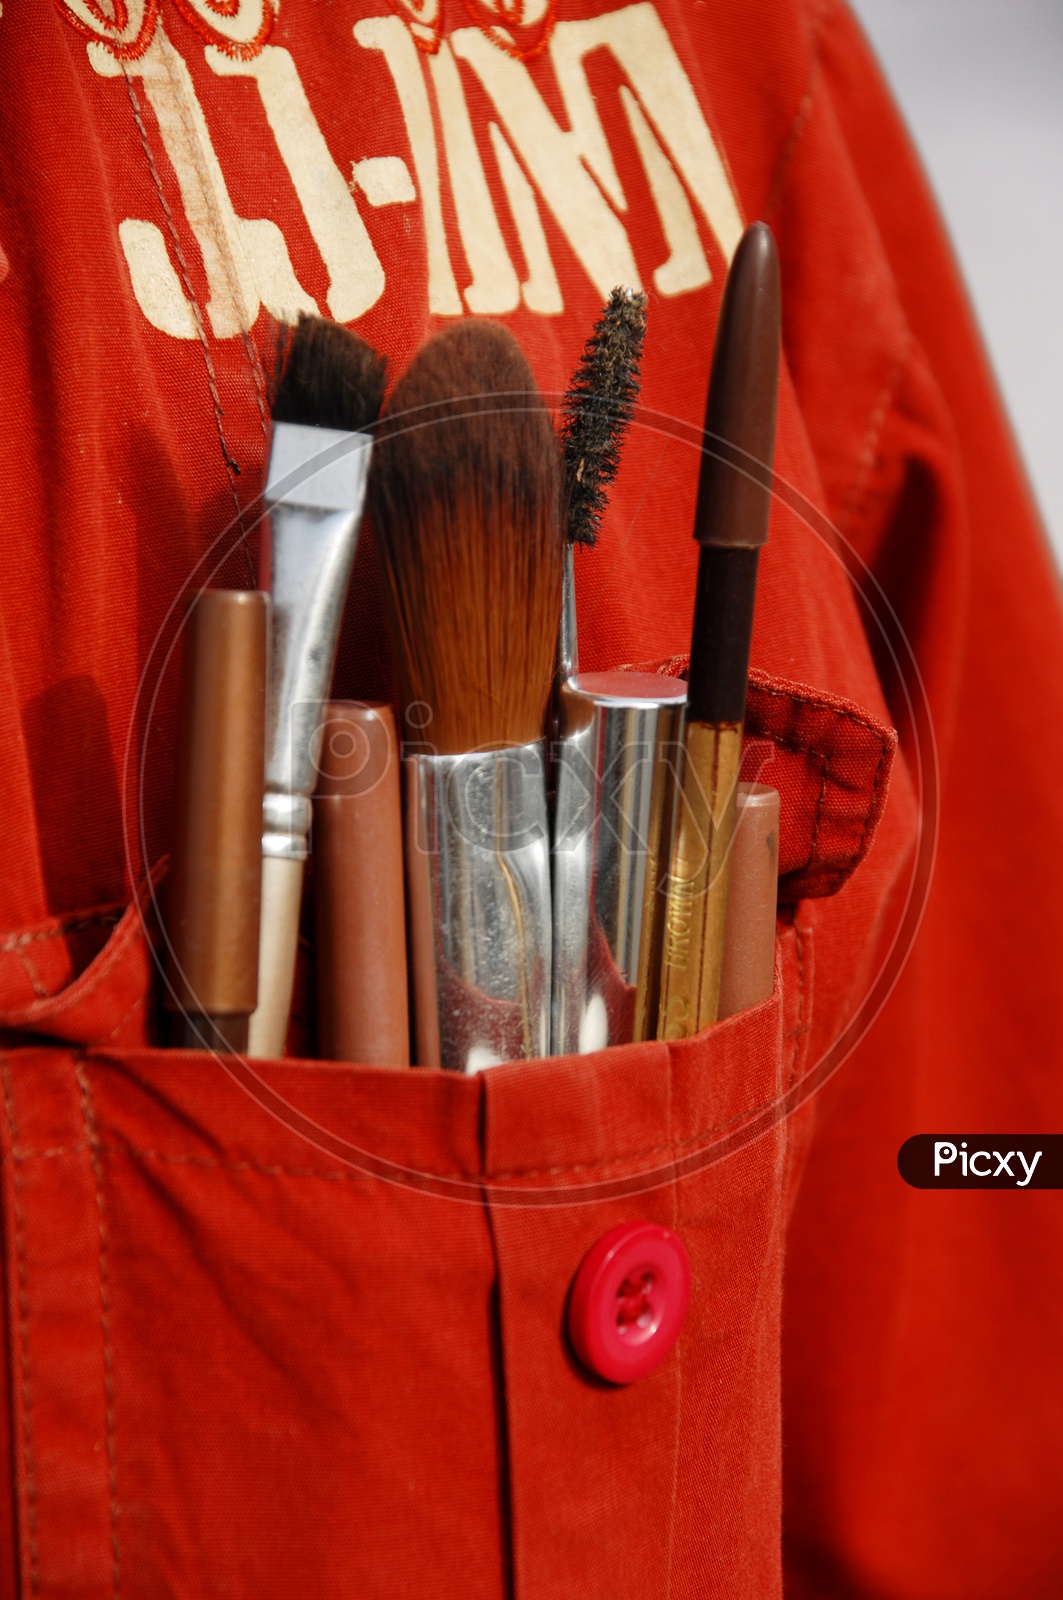 Makeup kit in a pocket